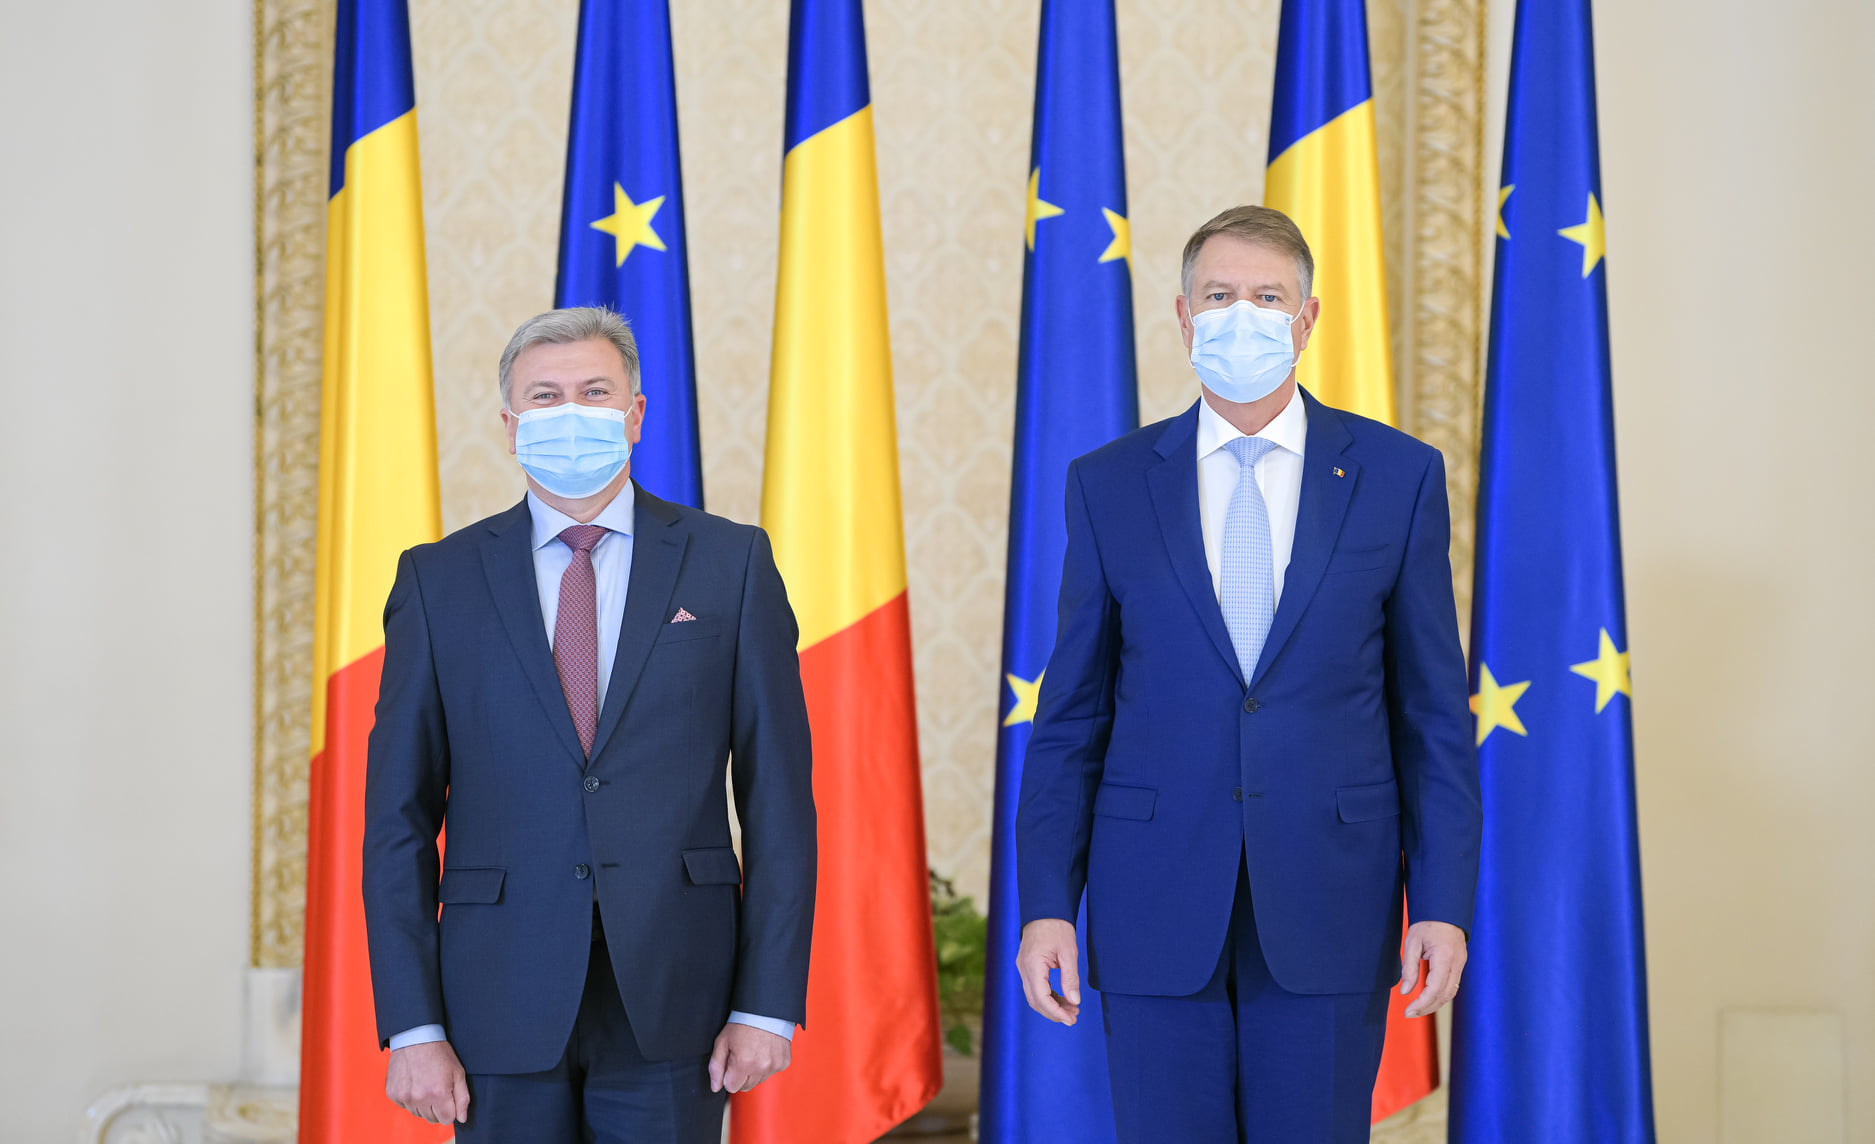 Președintele Iohannis: România și Republica Moldova, unite printr-o legătură extrem de trainică